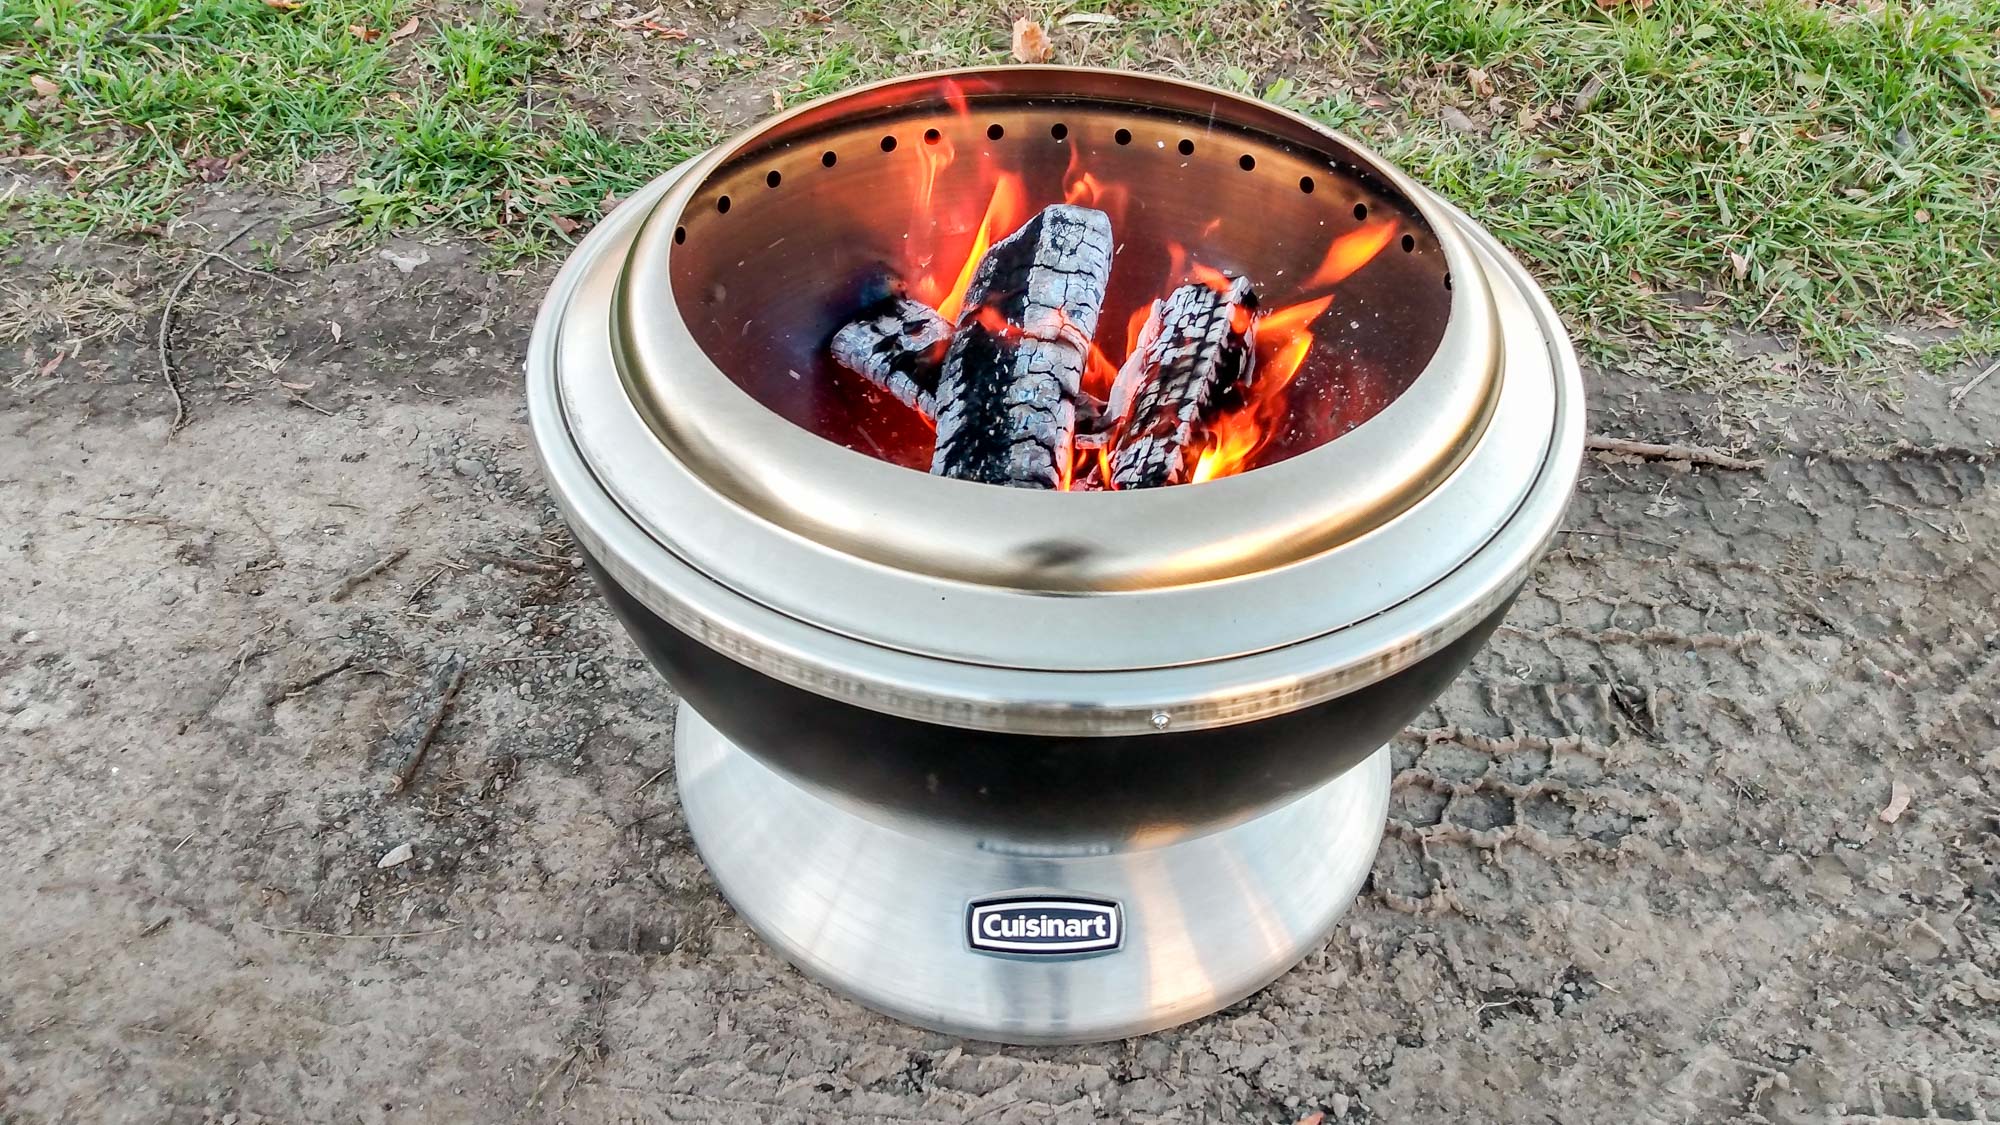 Los mejores pozos de fuego en 2023: Cuisinart Cleanburn Fire Pit